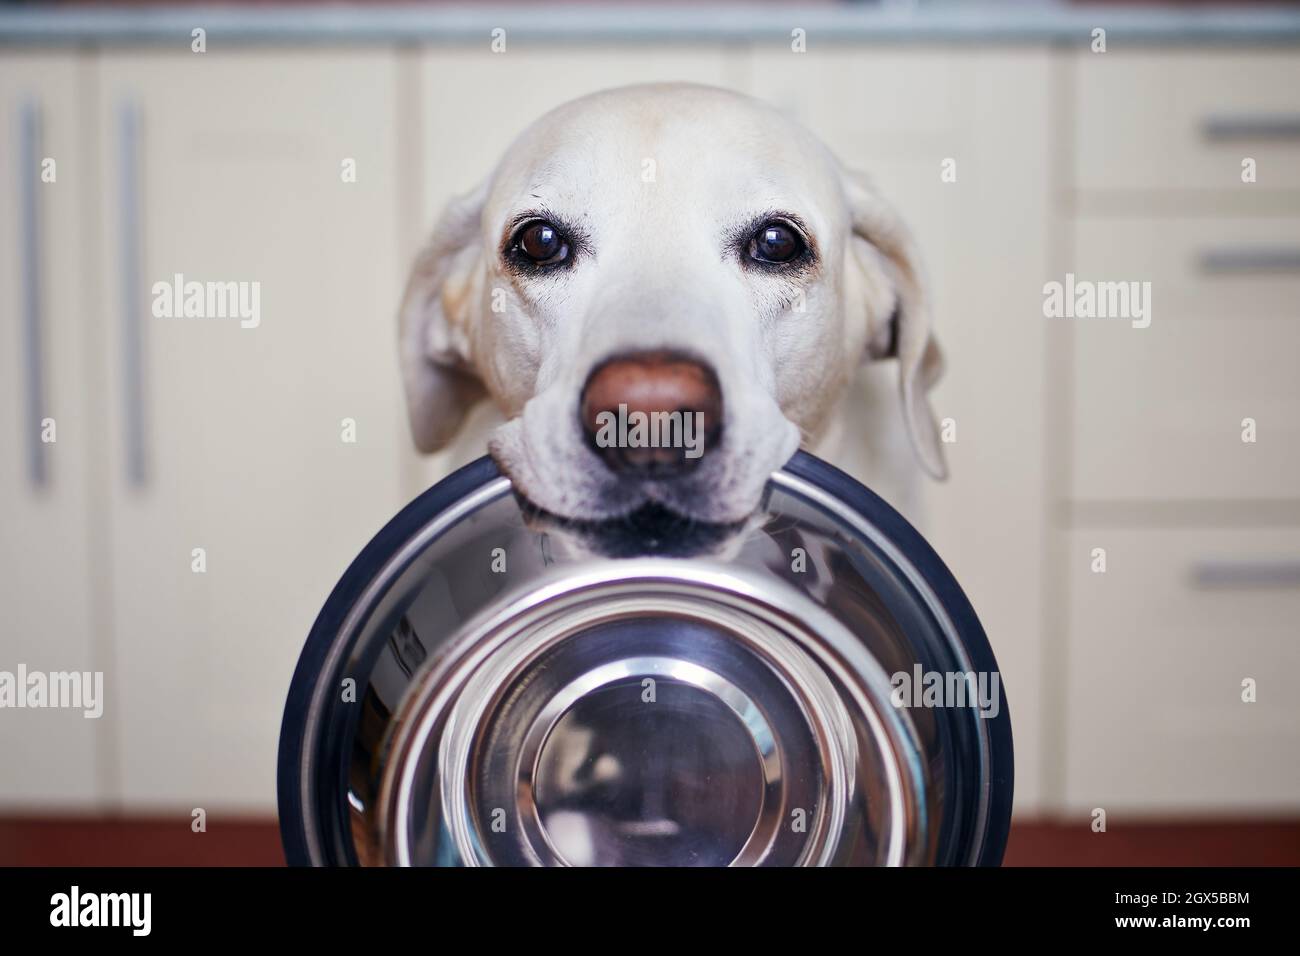 Der niedliche labrador Retriever trägt eine Hundeschale im Mund. Hungriger Hund mit traurigen Augen wartet in der heimischen Küche auf die Fütterung. Stockfoto